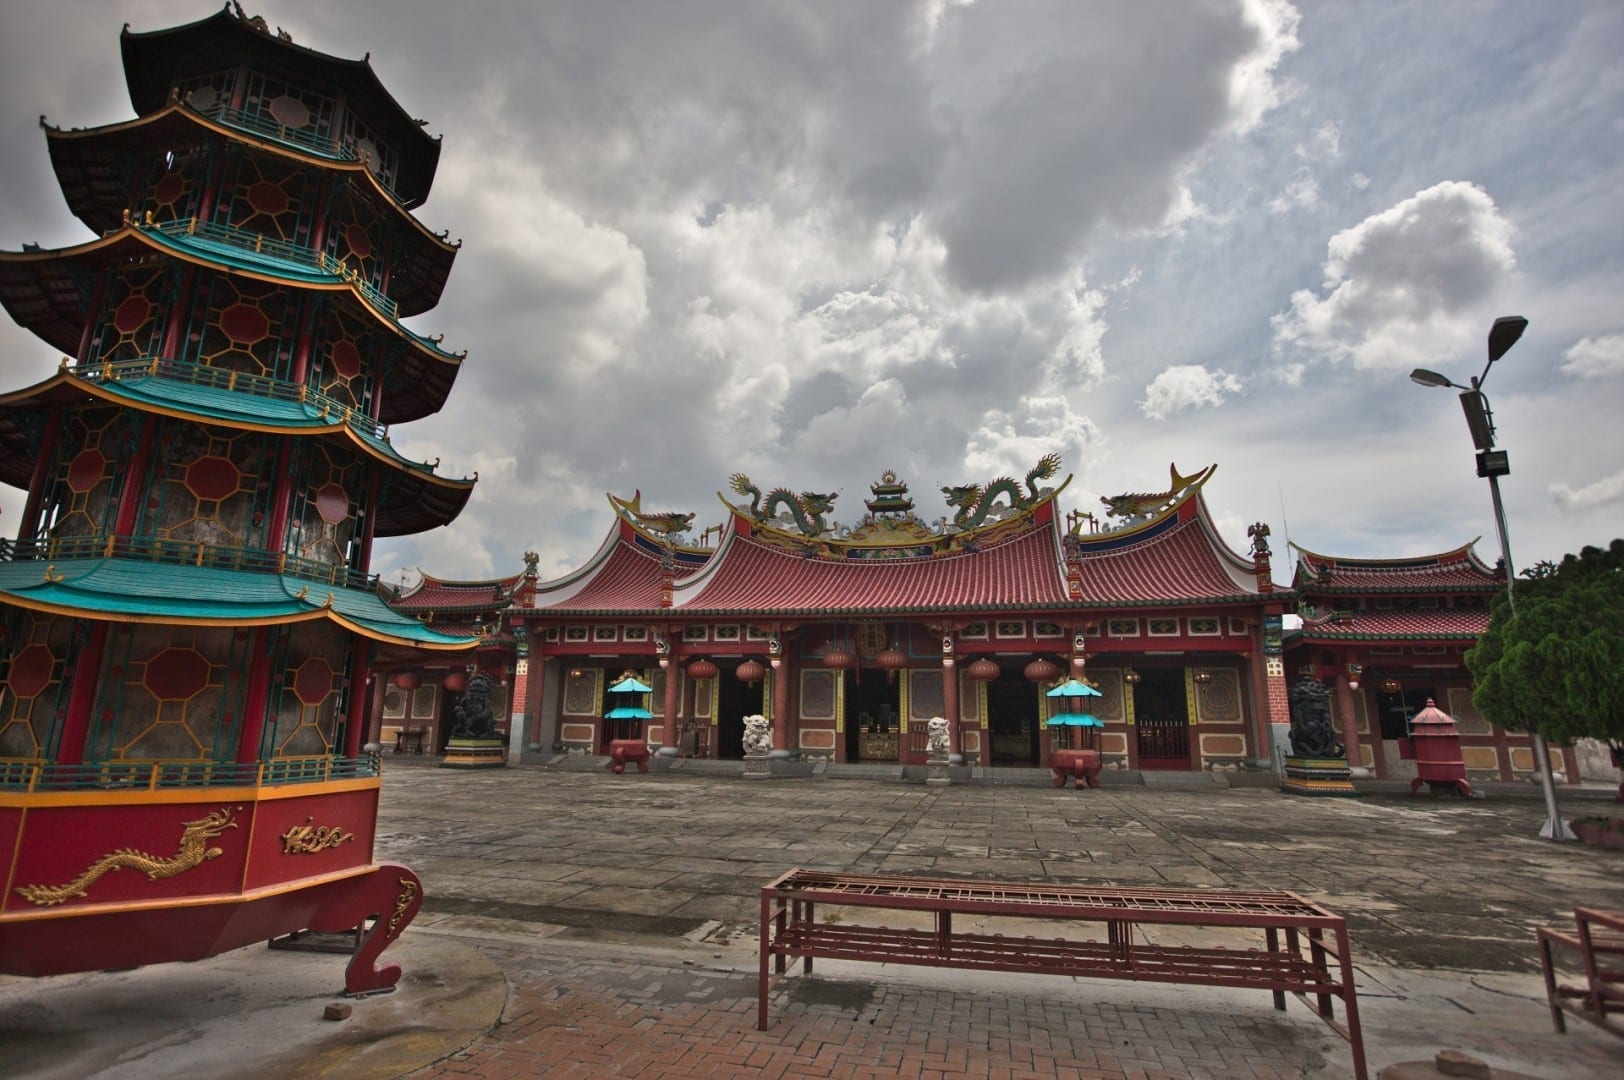 Vista hacia el salón principal con el quemador de incienso a la izquierda. El templo daoísta chino de Vihara Gunung Timur. Medan Indonesia